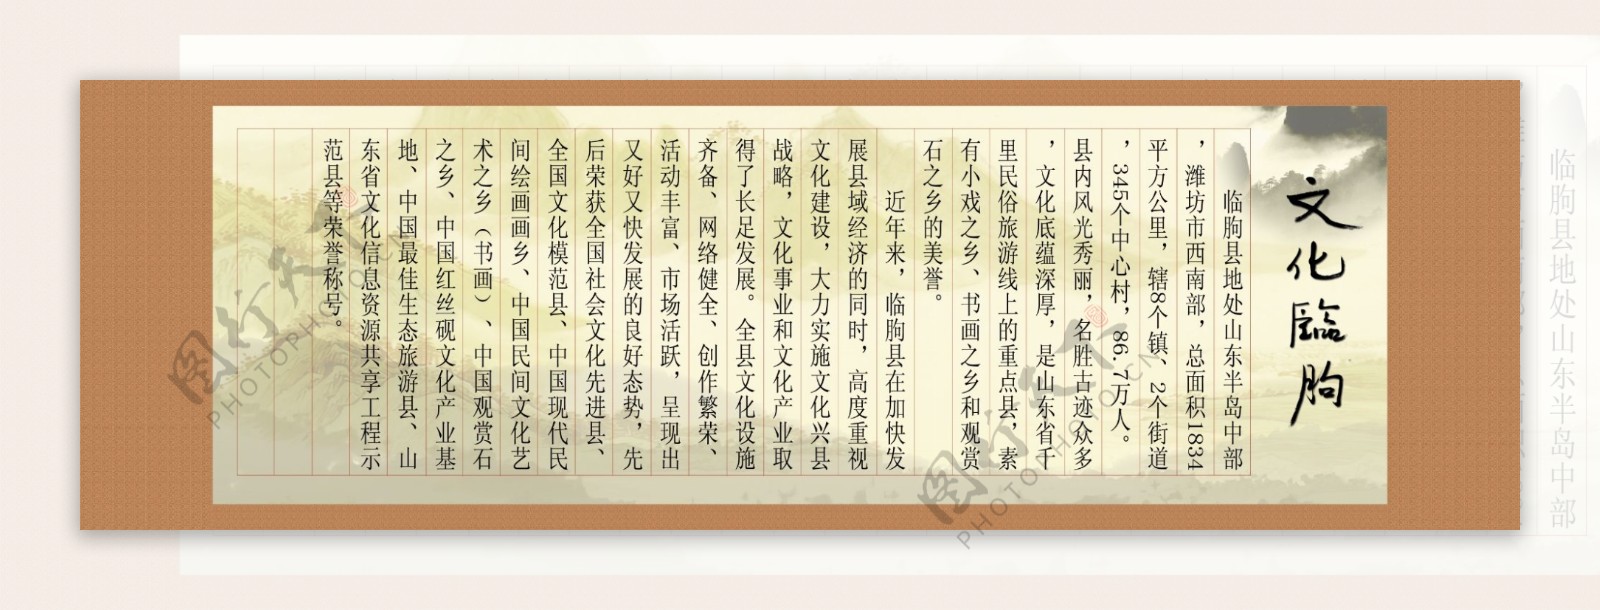 横式古典卷轴图片